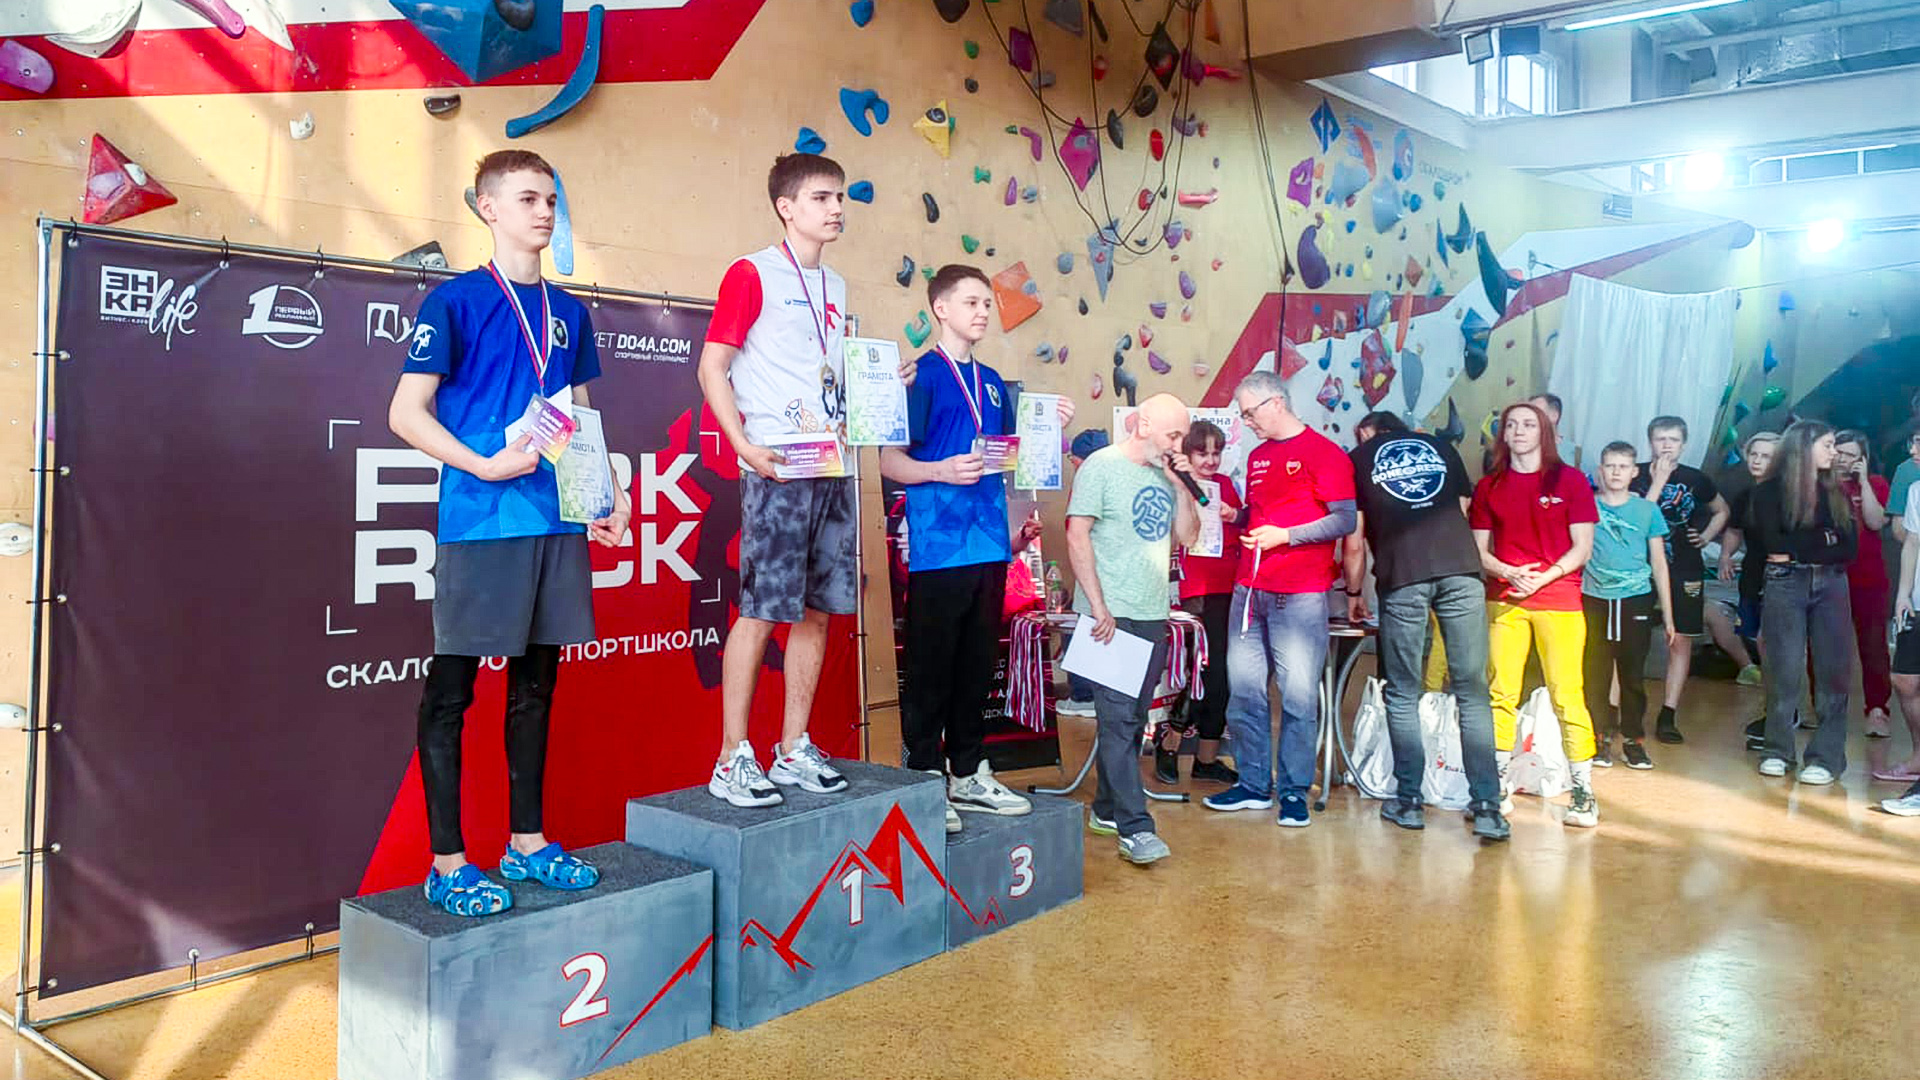 Пять медалей дальневосточного первенства завоевали скалолазы из Комсомольска